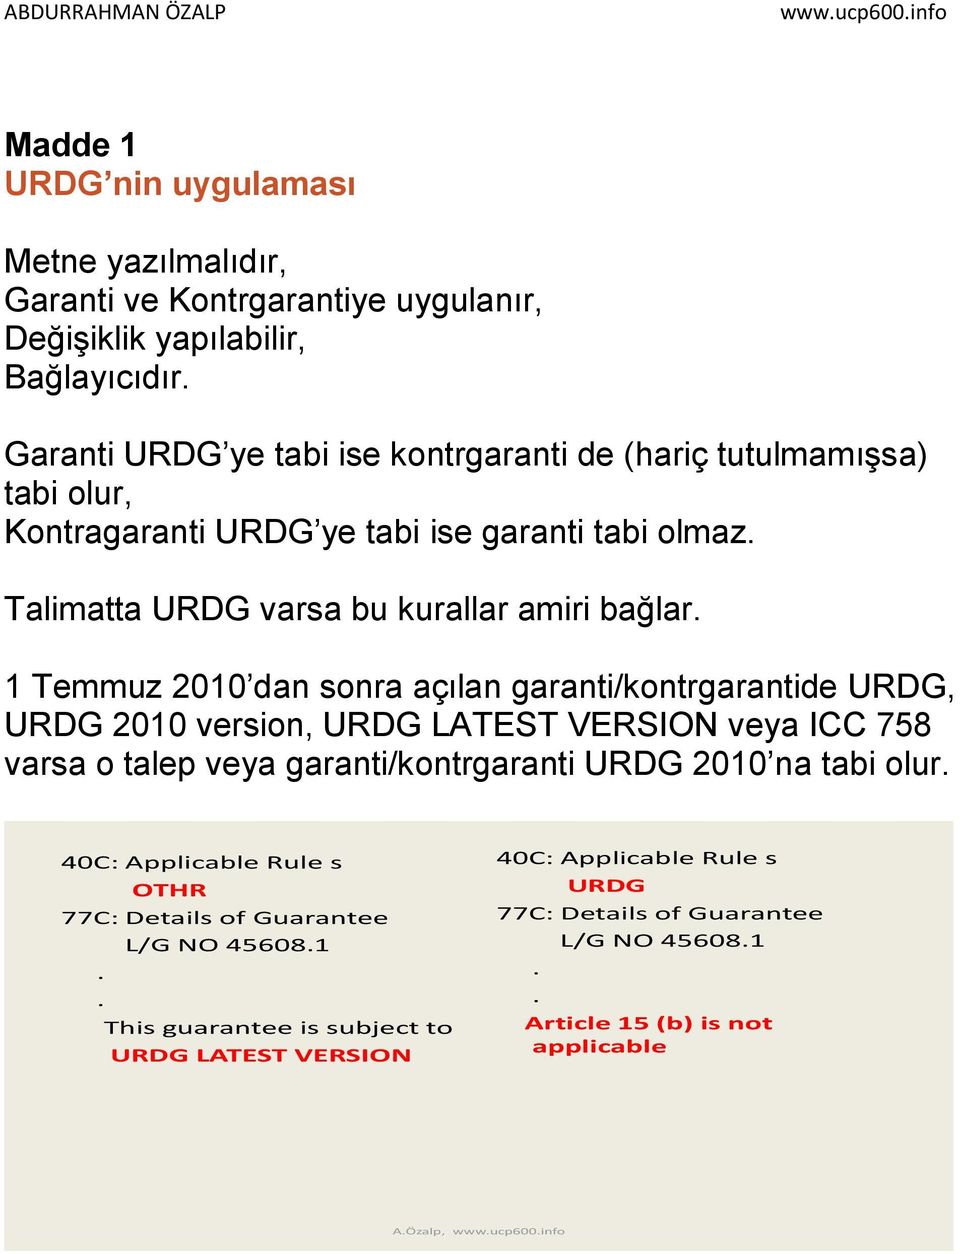 1 Temmuz 2010 dan sonra açılan garanti/kontrgarantide URDG, URDG 2010 version, URDG LATEST VERSION veya ICC 758 varsa o talep veya garanti/kontrgaranti URDG 2010 na tabi olur.